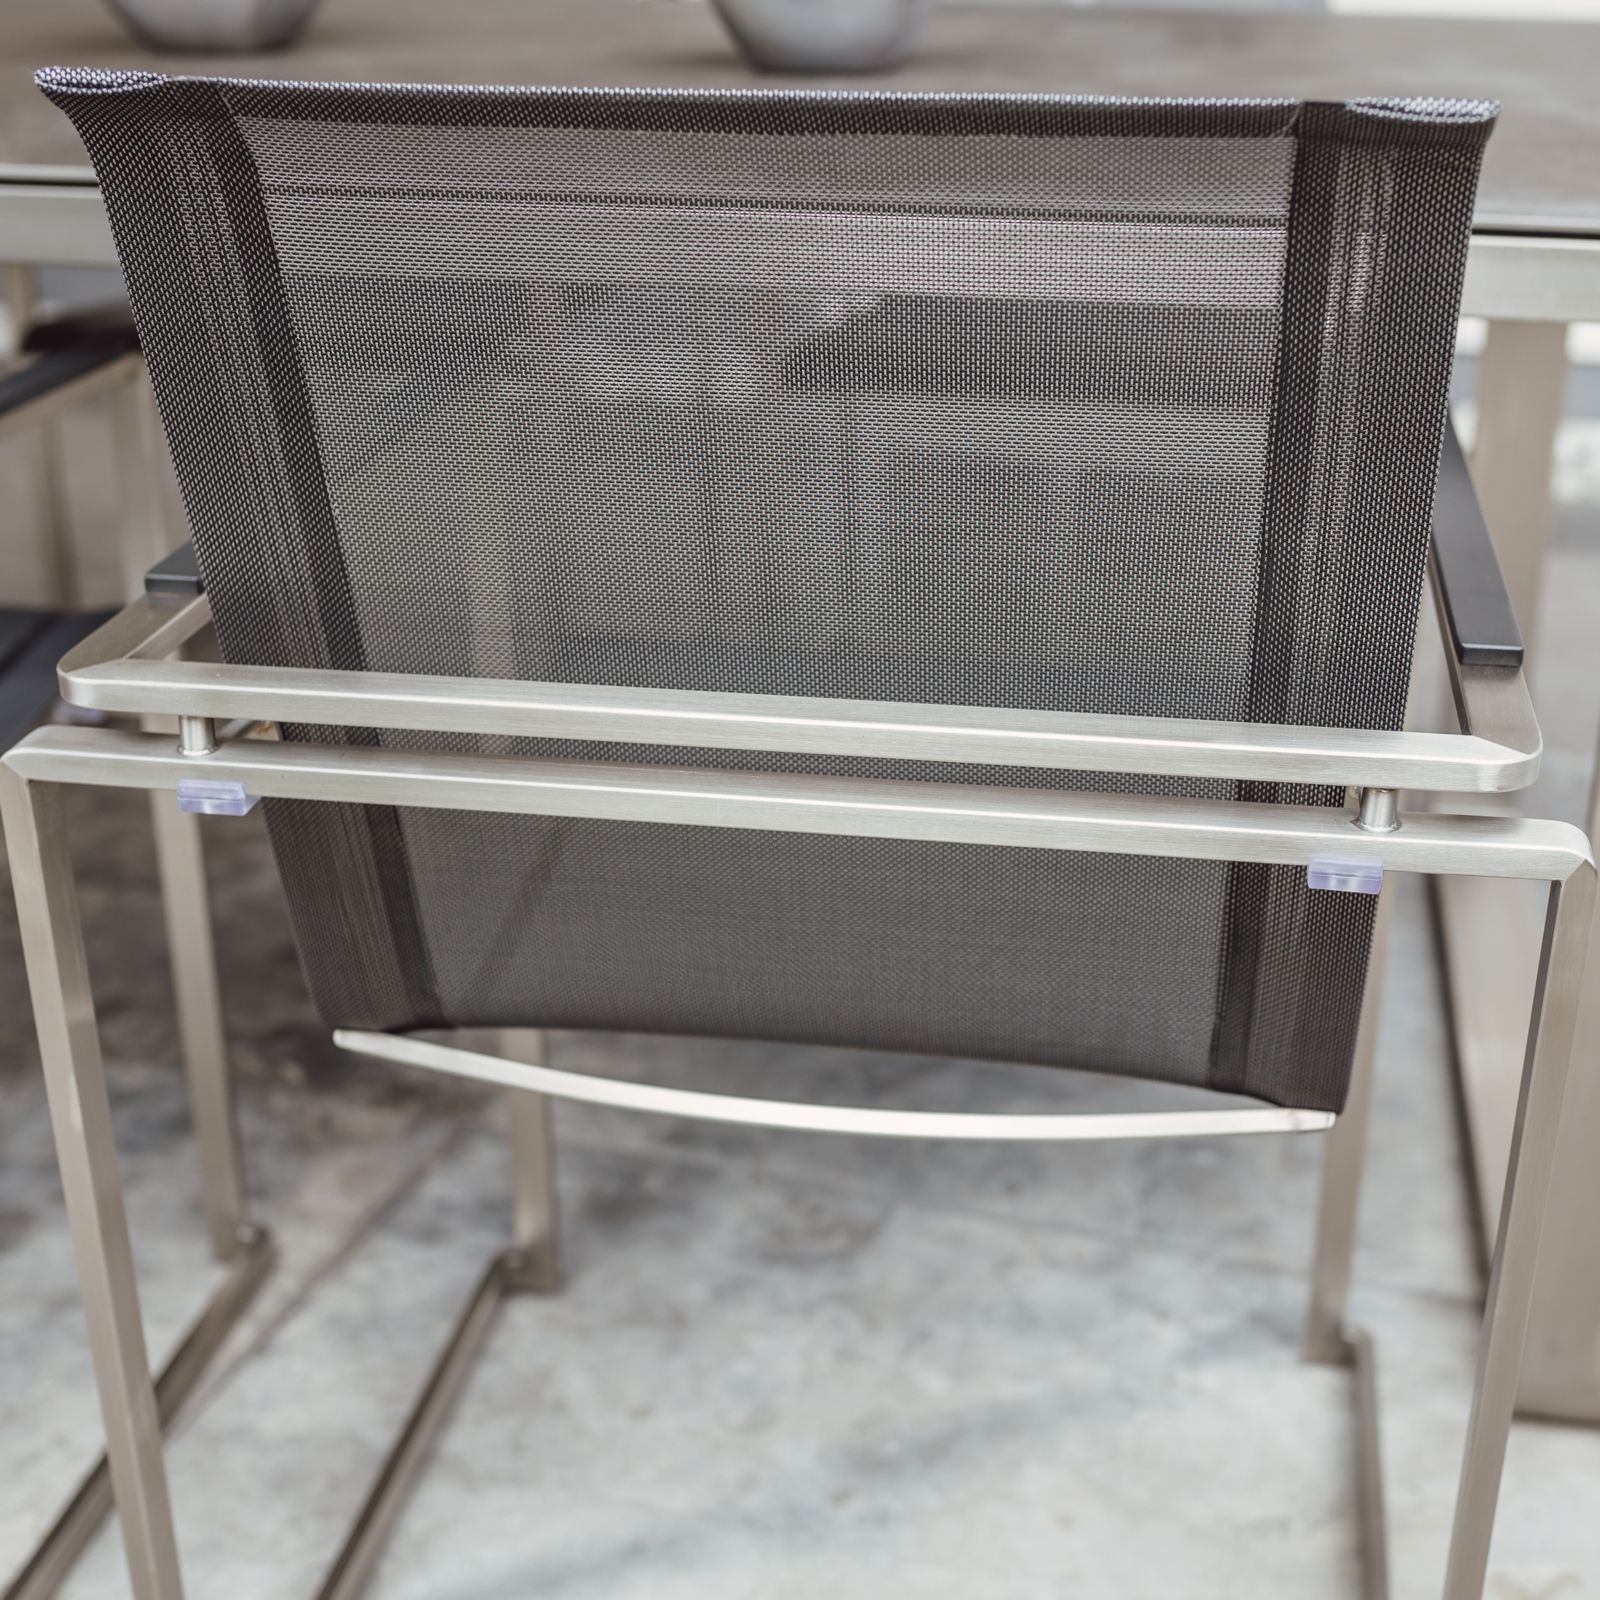 Tuinmeubelset: 6 stoelen en 1 tafel in roestvrij staal en glaskeramisch tafelblad